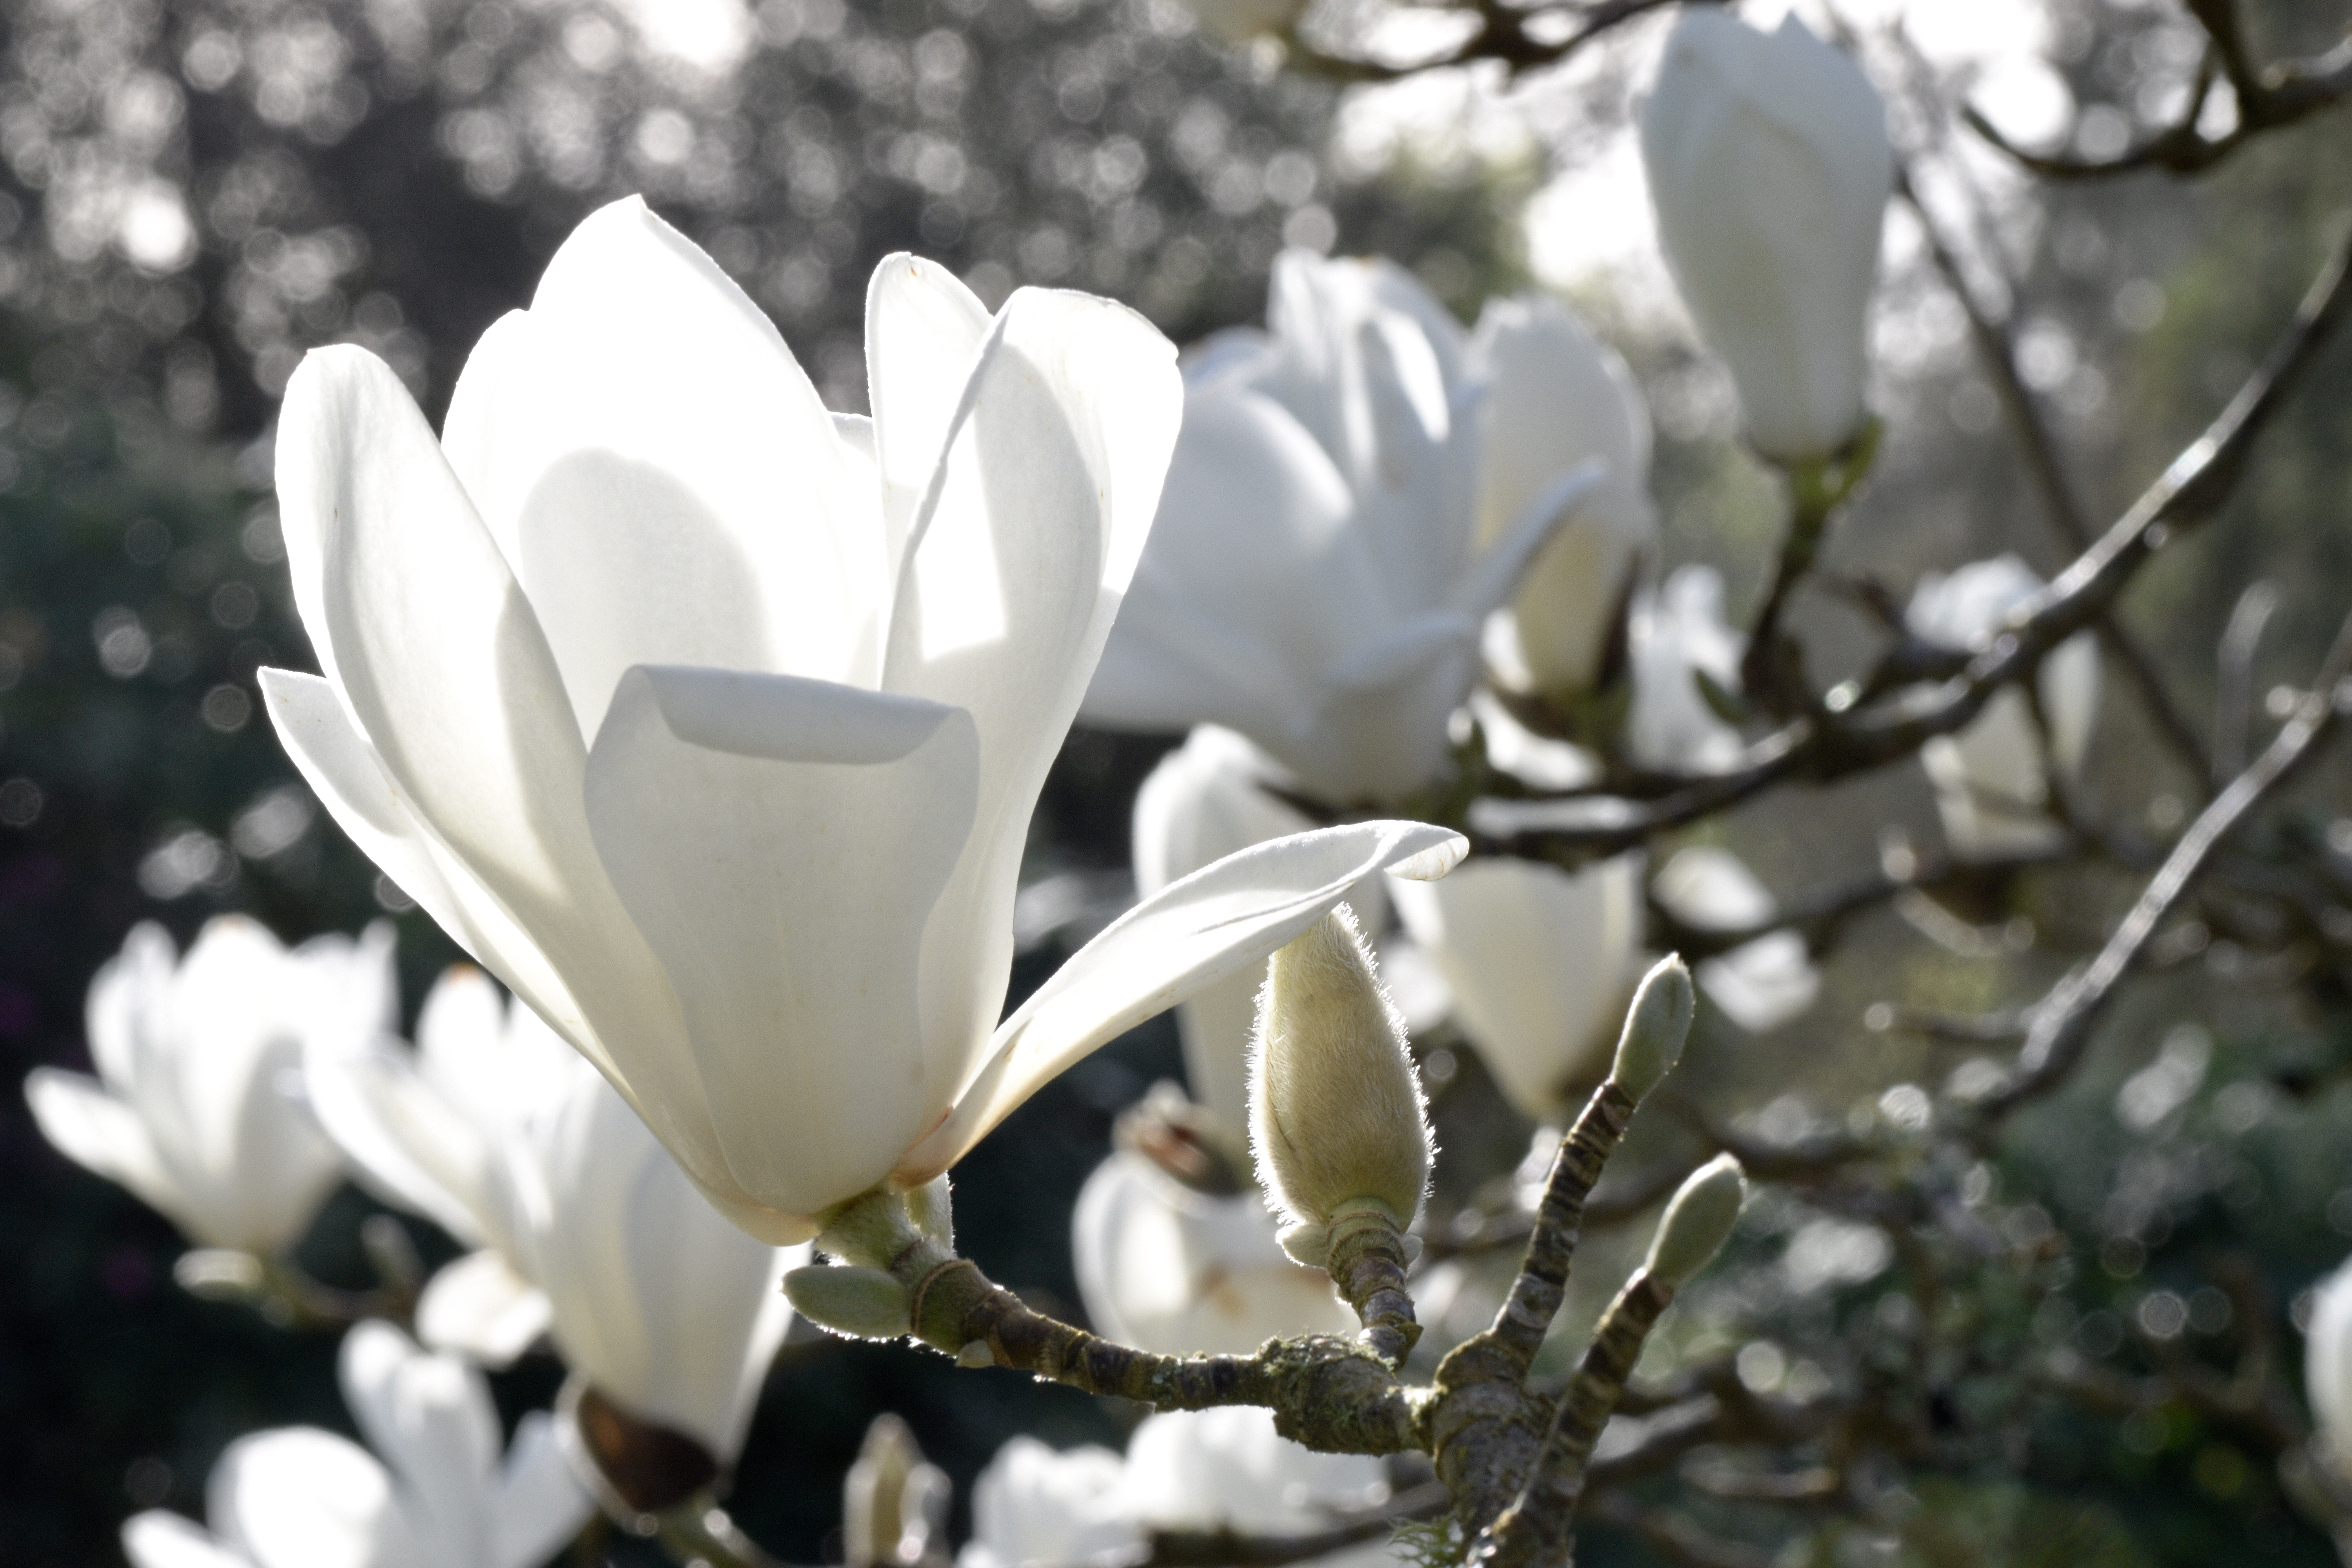 Magnolia in bloom